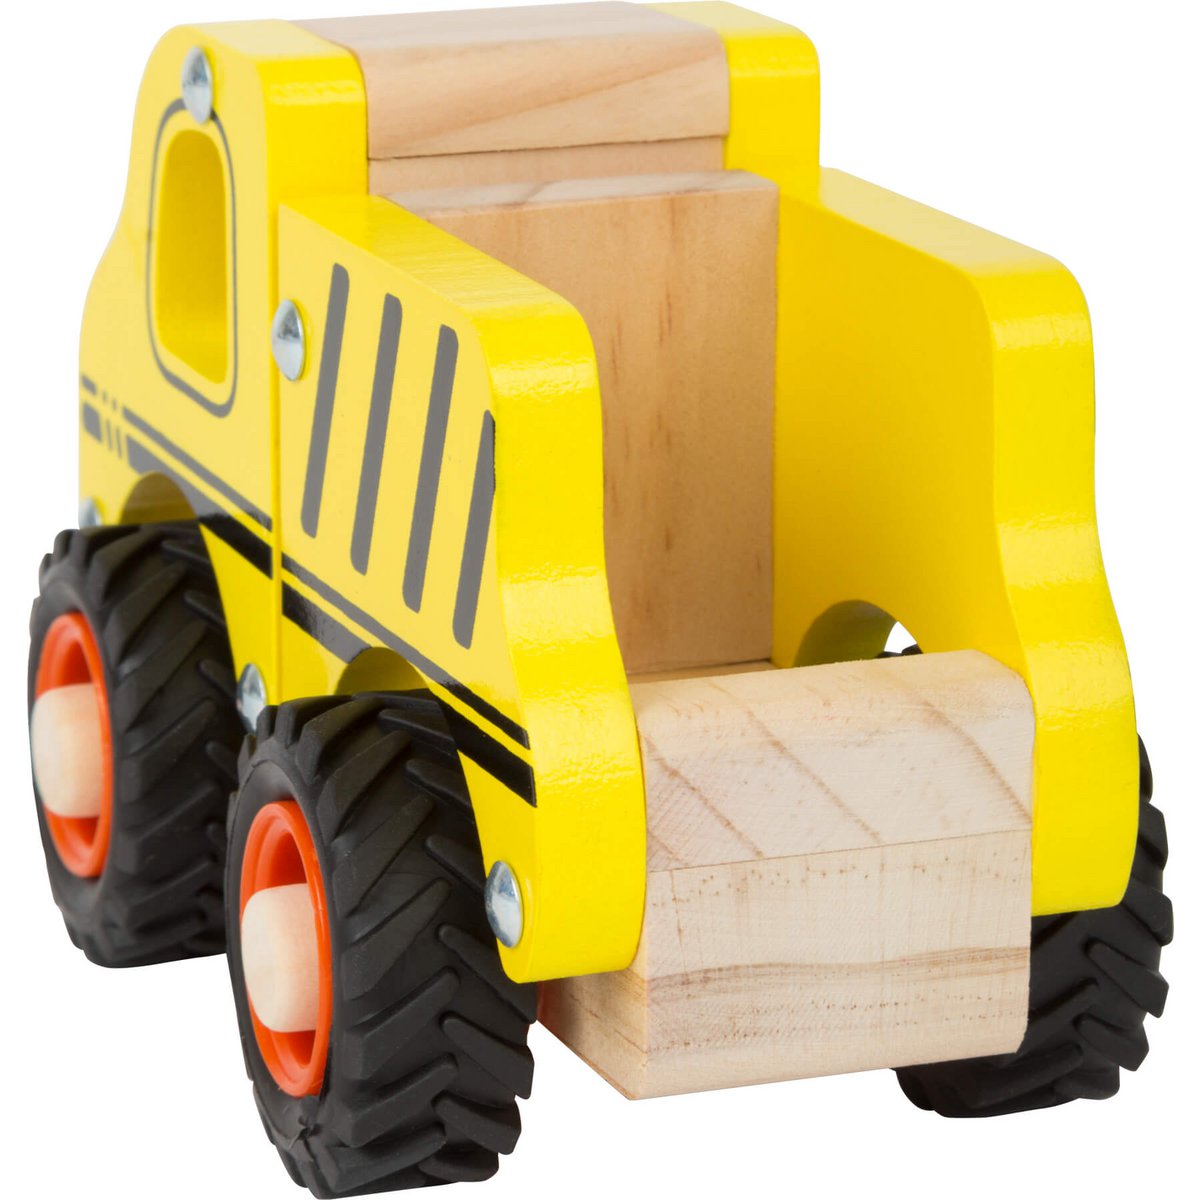 Gelbes Baufahrzeug aus FSC-zertifizierten Holz mit gummierten Reifen